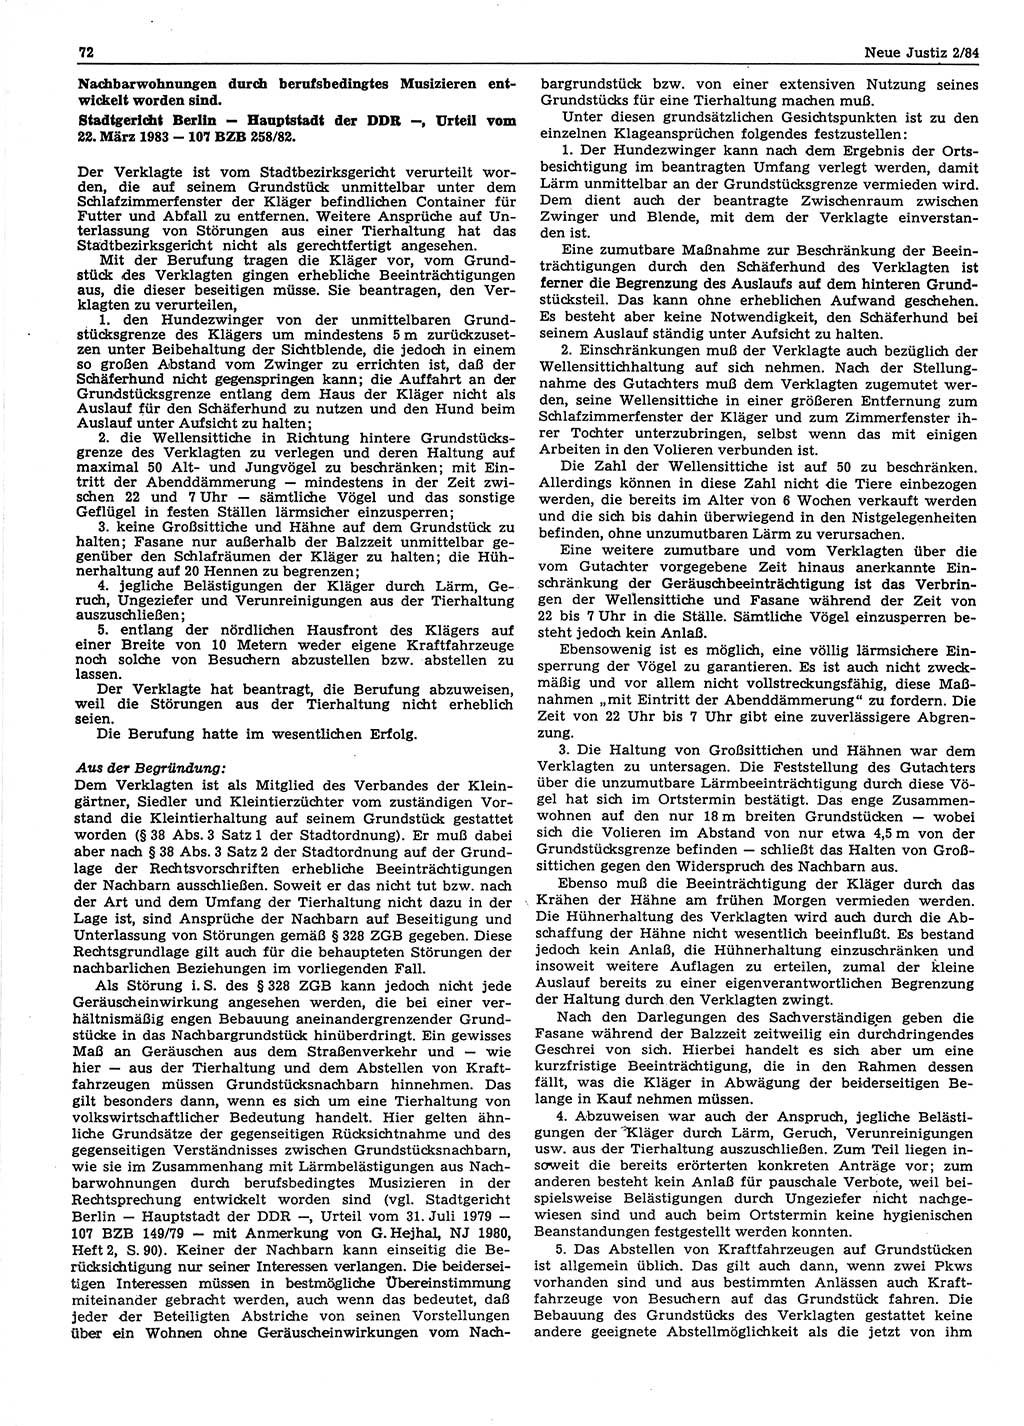 Neue Justiz (NJ), Zeitschrift für sozialistisches Recht und Gesetzlichkeit [Deutsche Demokratische Republik (DDR)], 38. Jahrgang 1984, Seite 72 (NJ DDR 1984, S. 72)